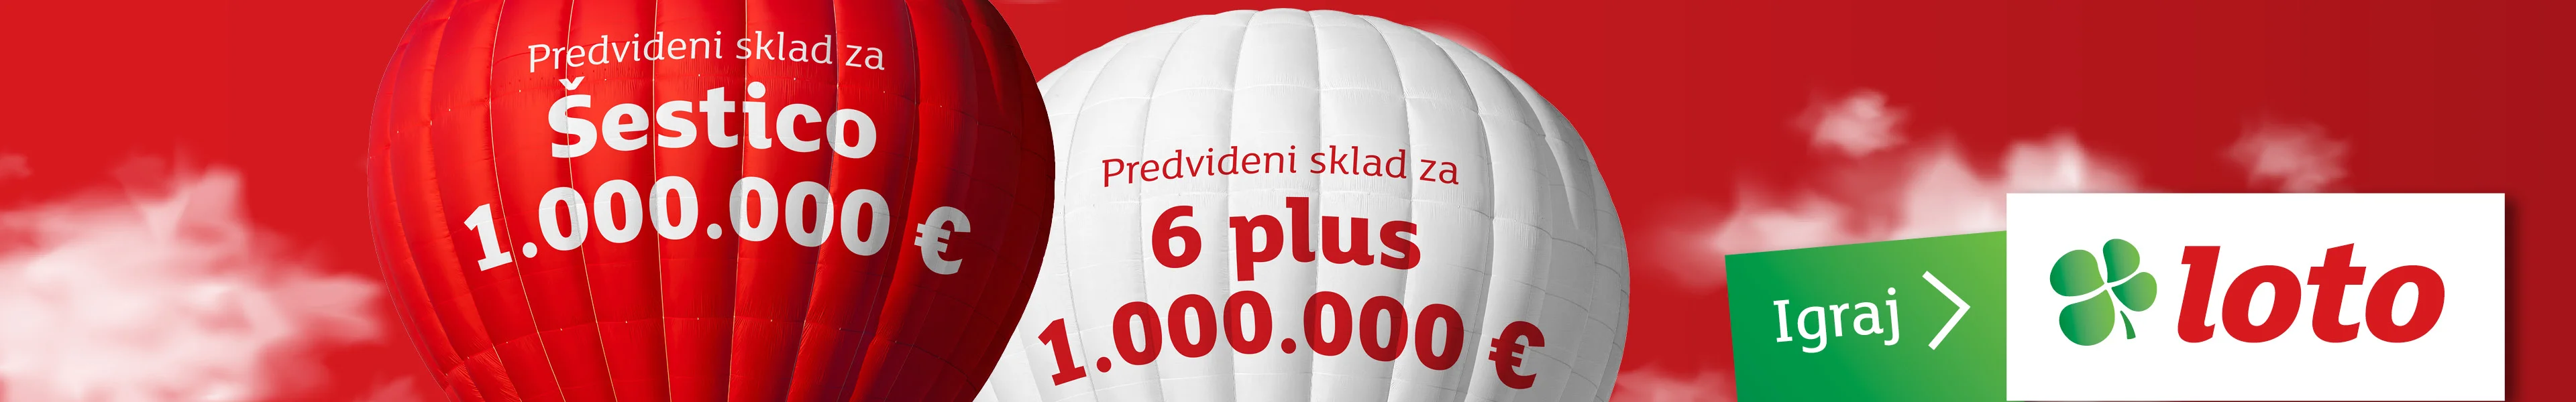 Predviden sklad za Šestico 1.000.000 € in predviden sklad za 6 plus 1.000.000 €. Igraj